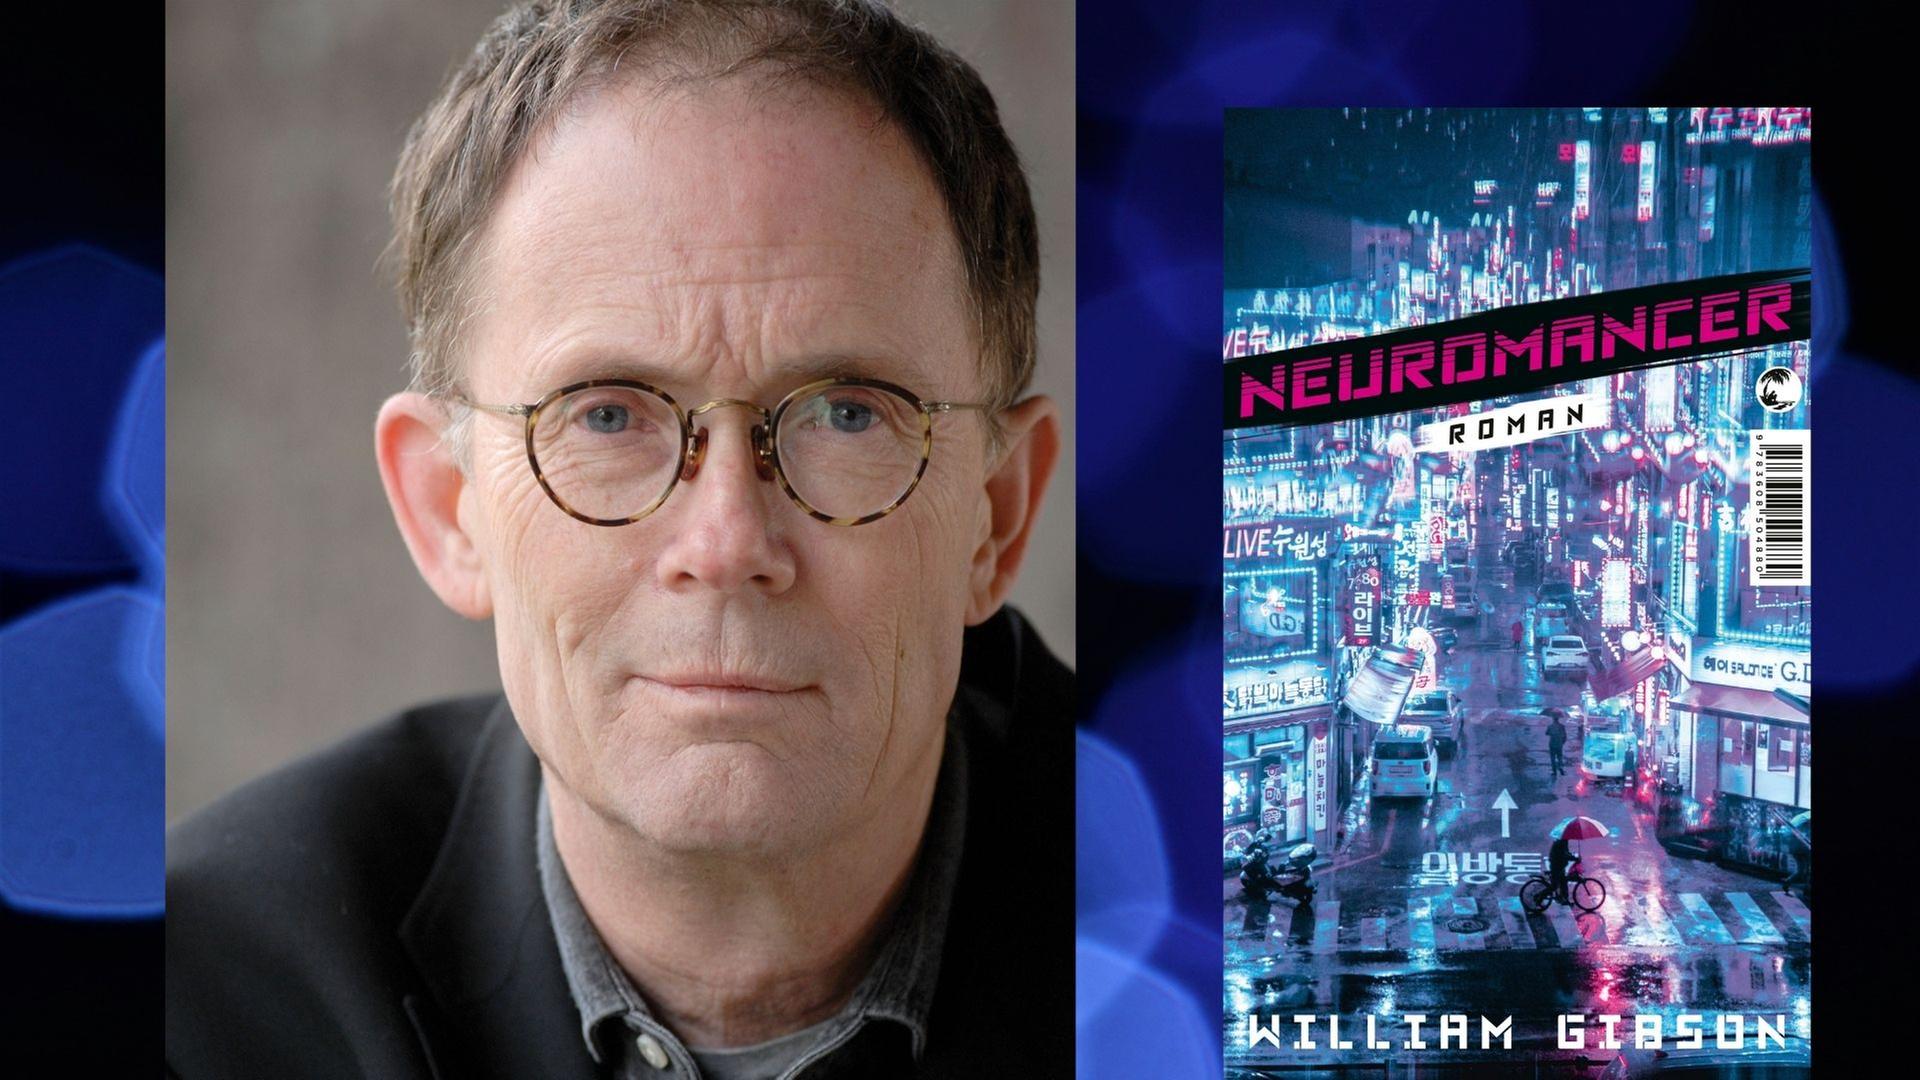 William Gibson: "Die Neuromancer-Trilogie" Zu sehen sind der Autor und der erste Band der Trilogie "Neuromancer", auf dessen Cover eine Großstadt bei Nacht abgebildet ist.